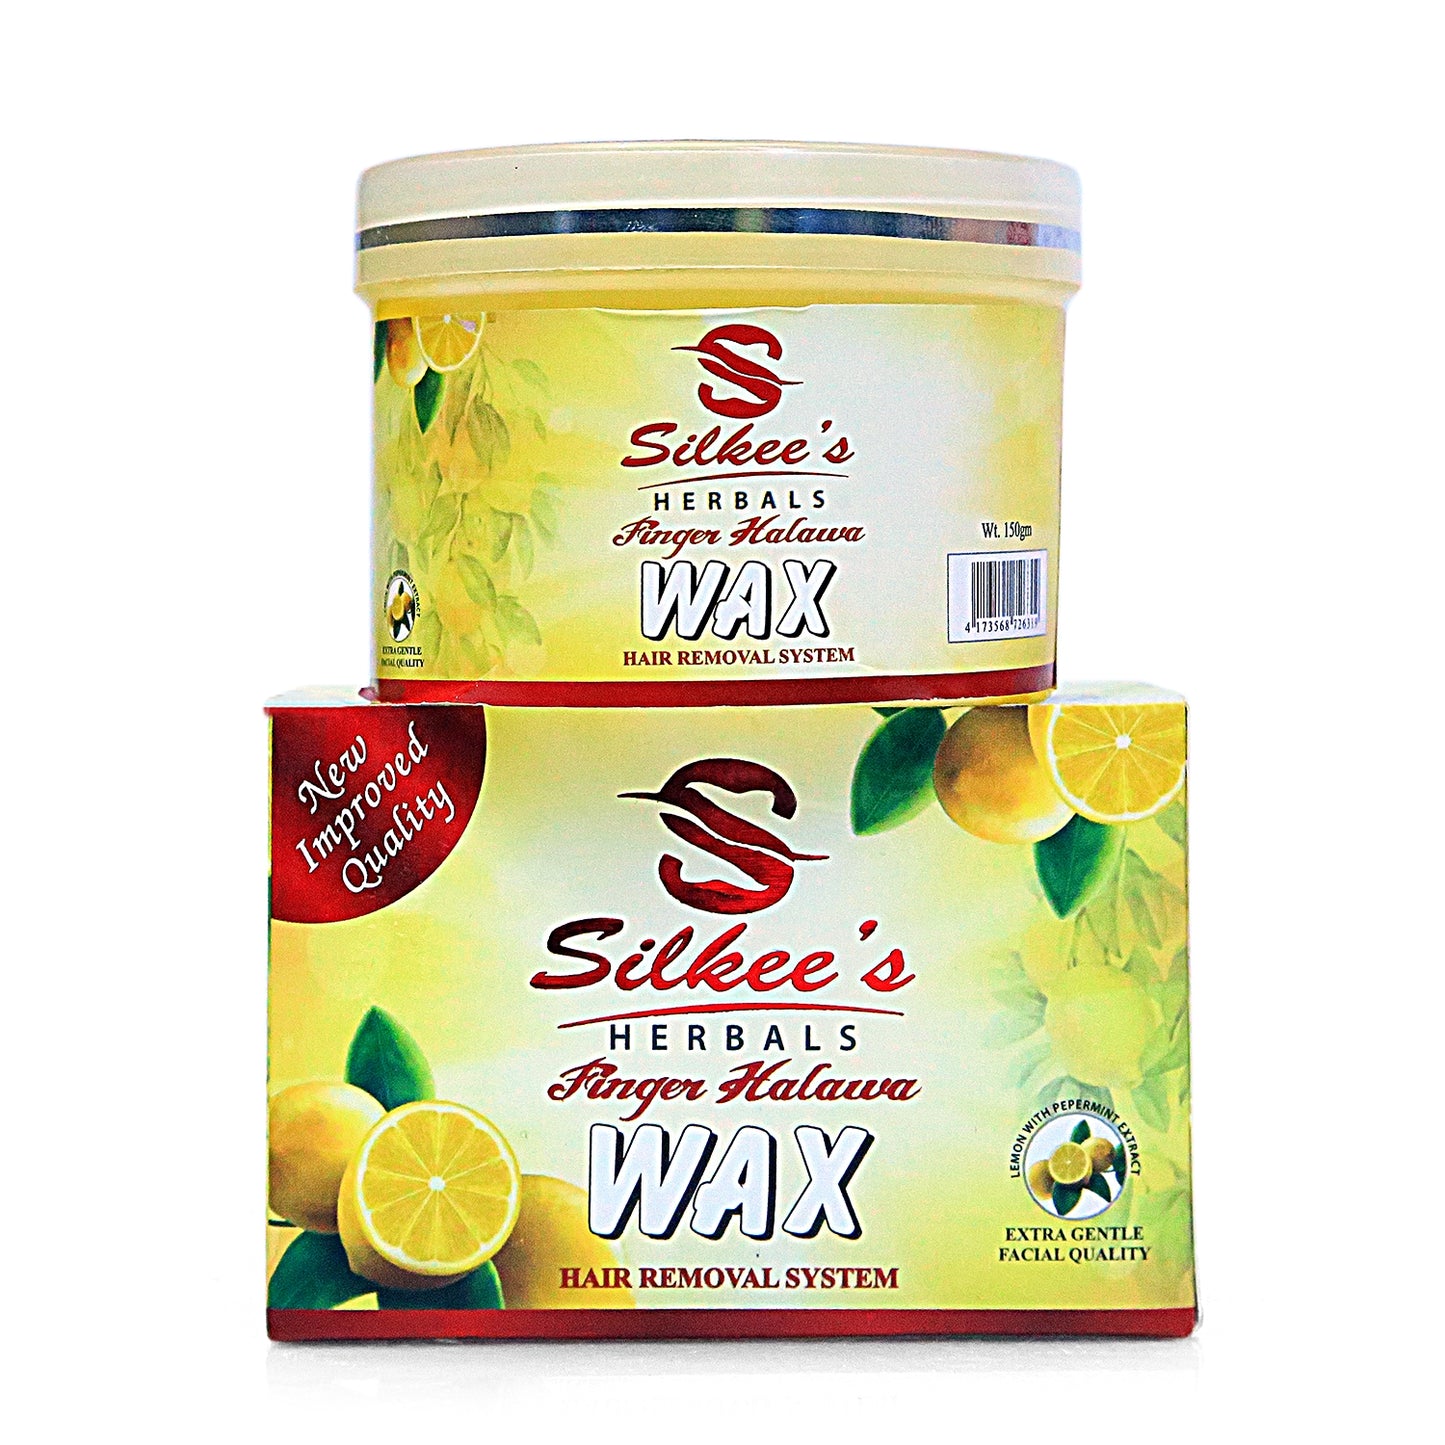 Herbals & Natural Finger Halawa Wax with Wax Strip (Pack Of 2) - FlyingCart.pk